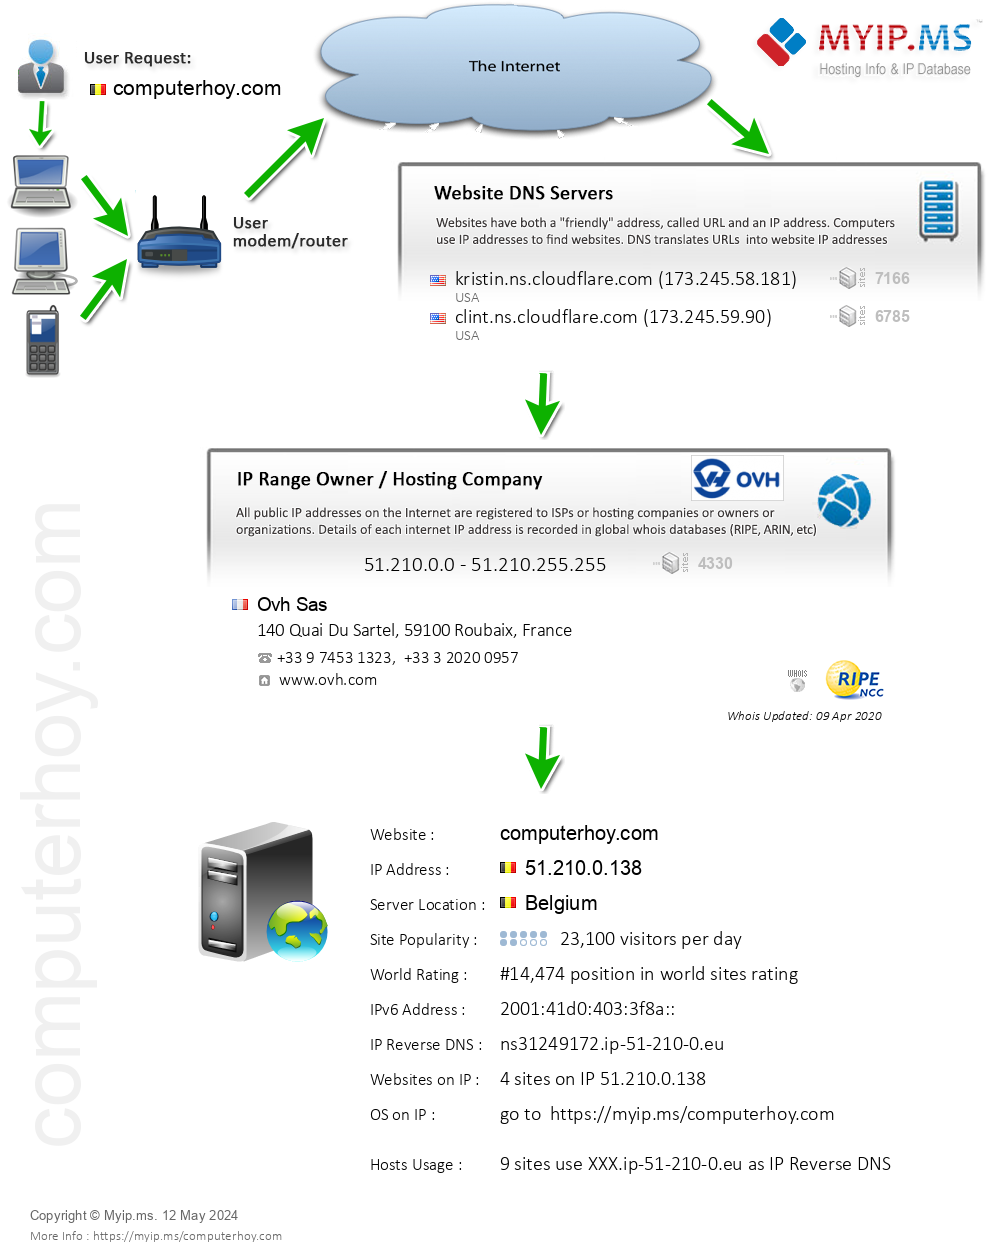 Computerhoy.com - Website Hosting Visual IP Diagram